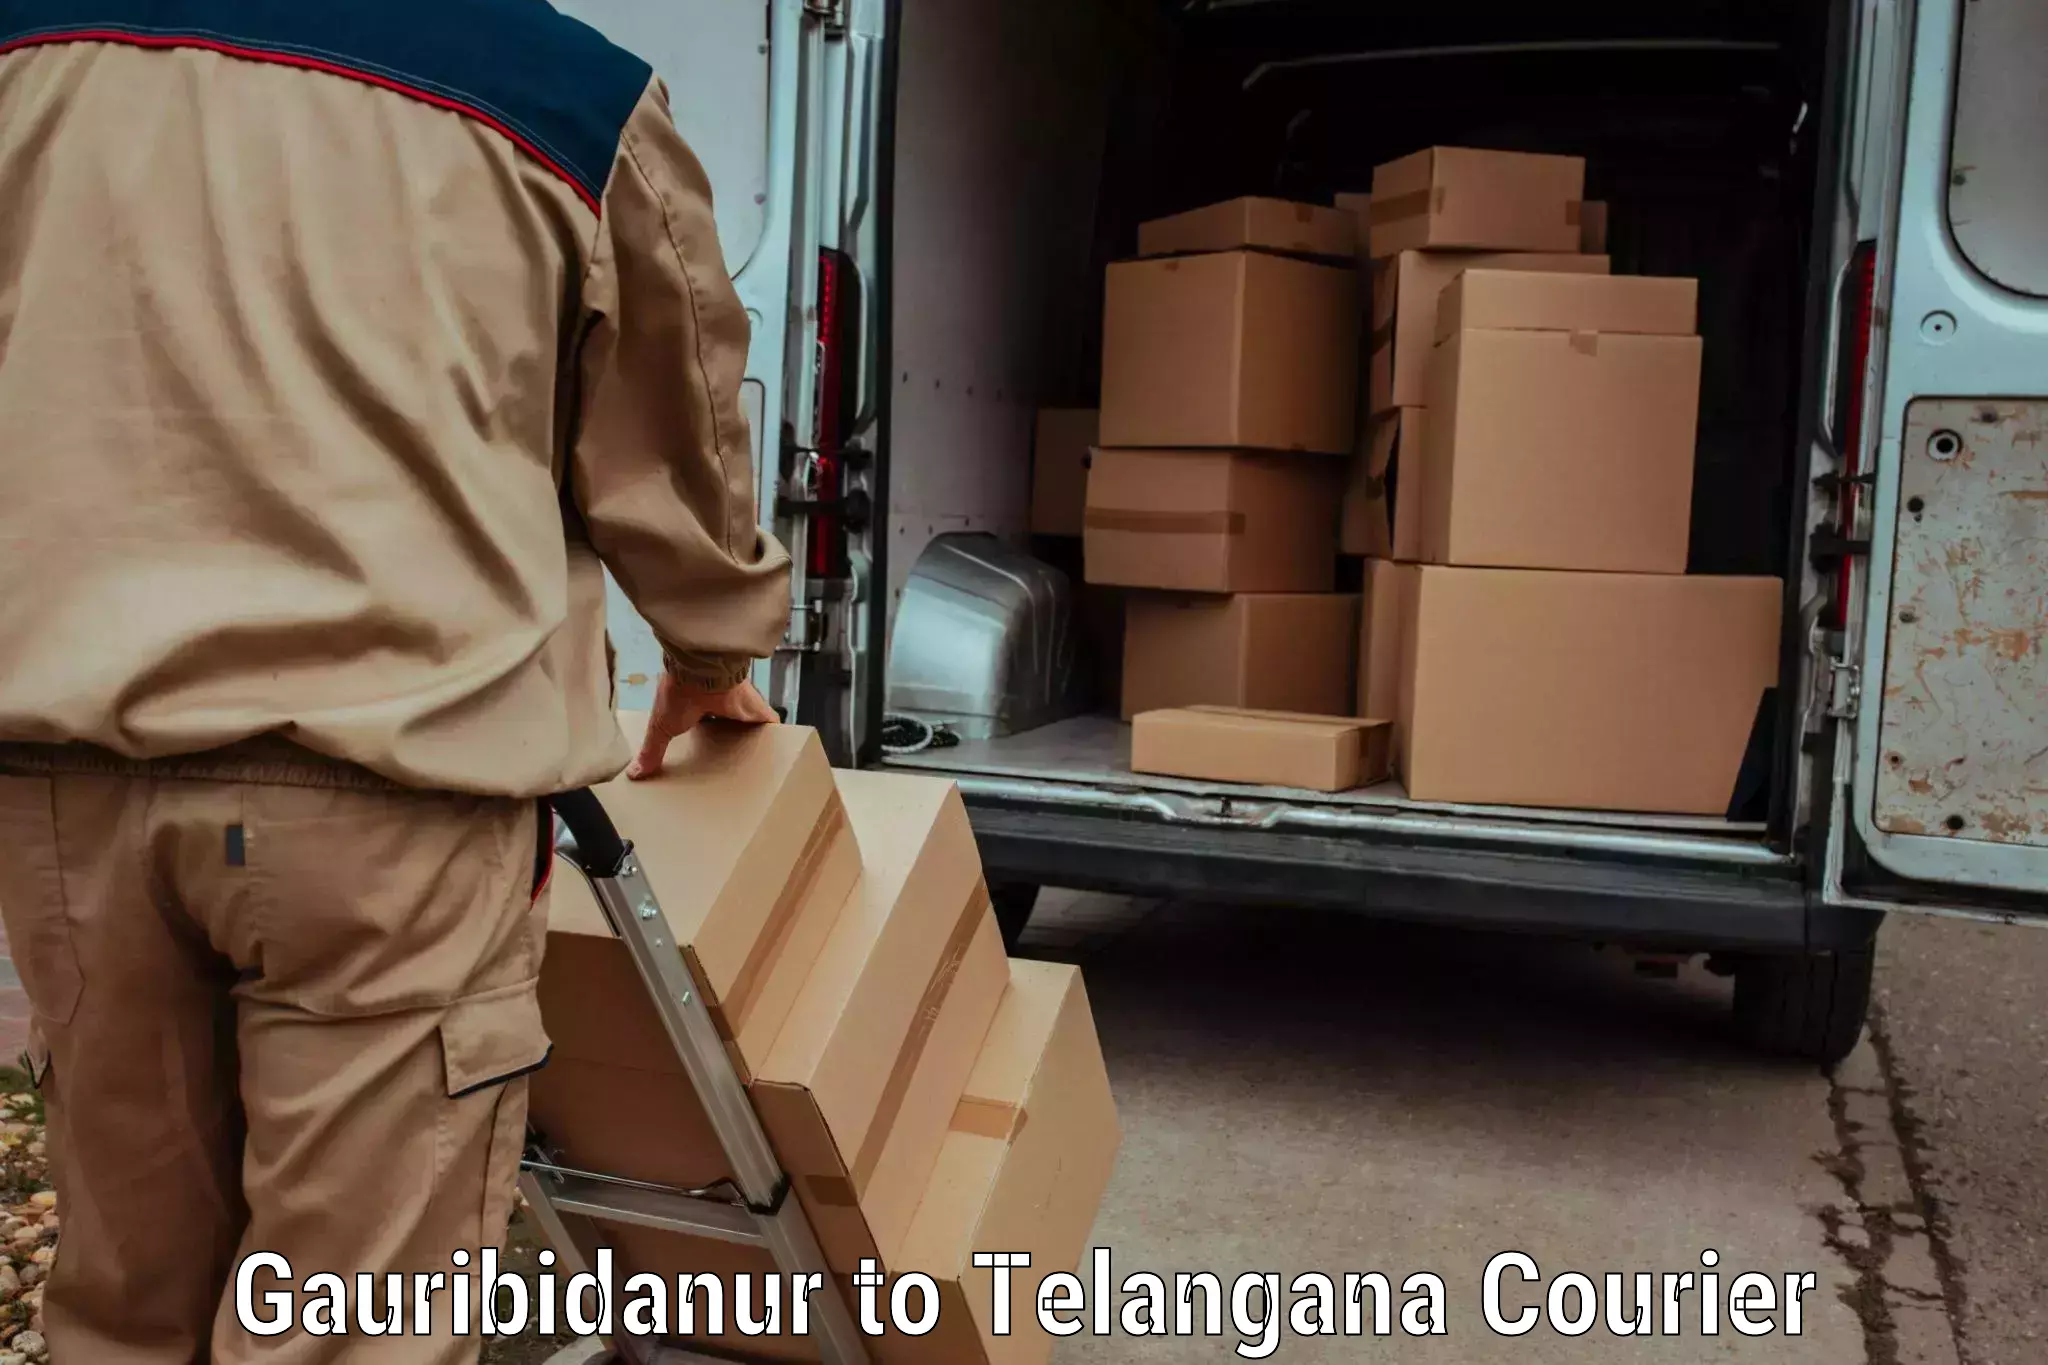 Cash on delivery service Gauribidanur to Bhuvanagiri